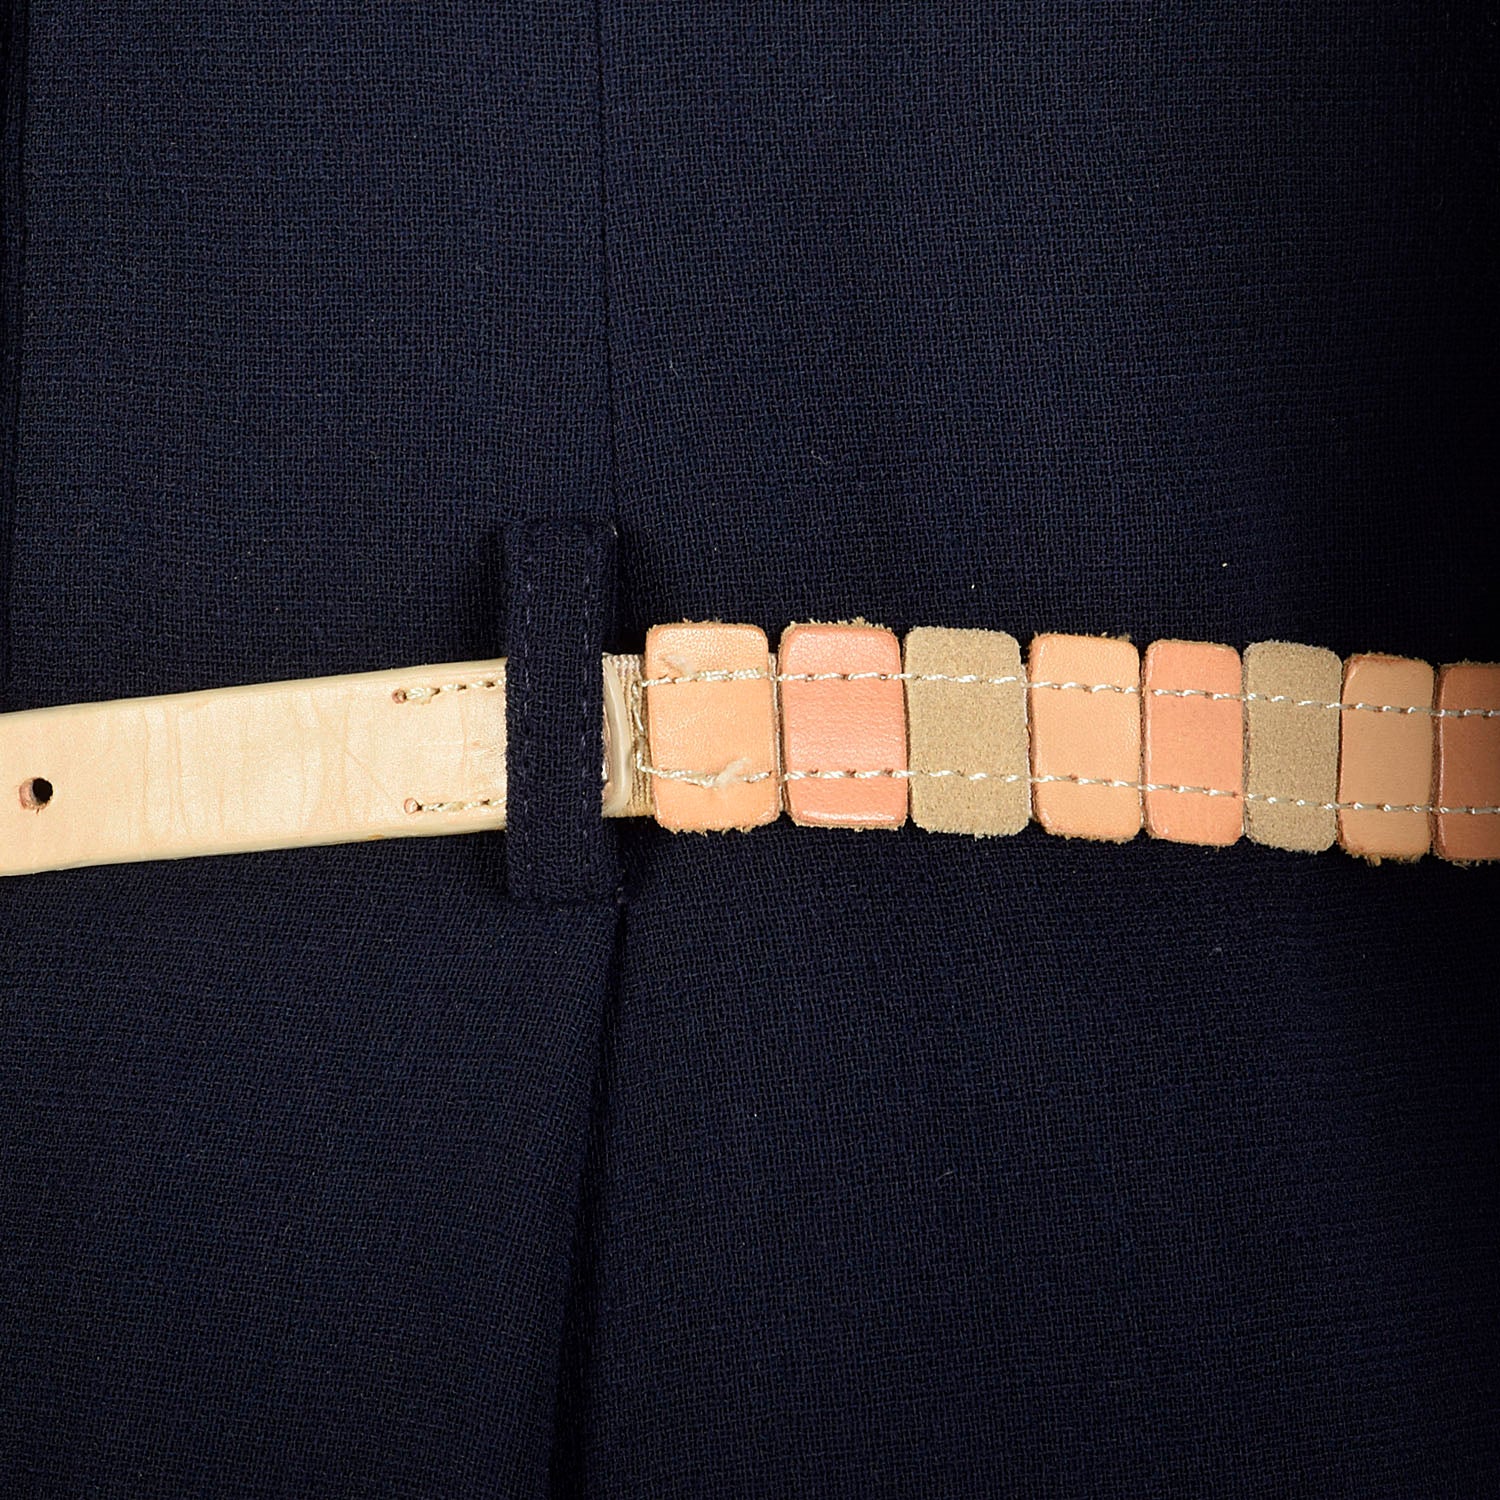 Geoffrey Beene Dress 1960s Mod Pleated Mini Long Sleeve